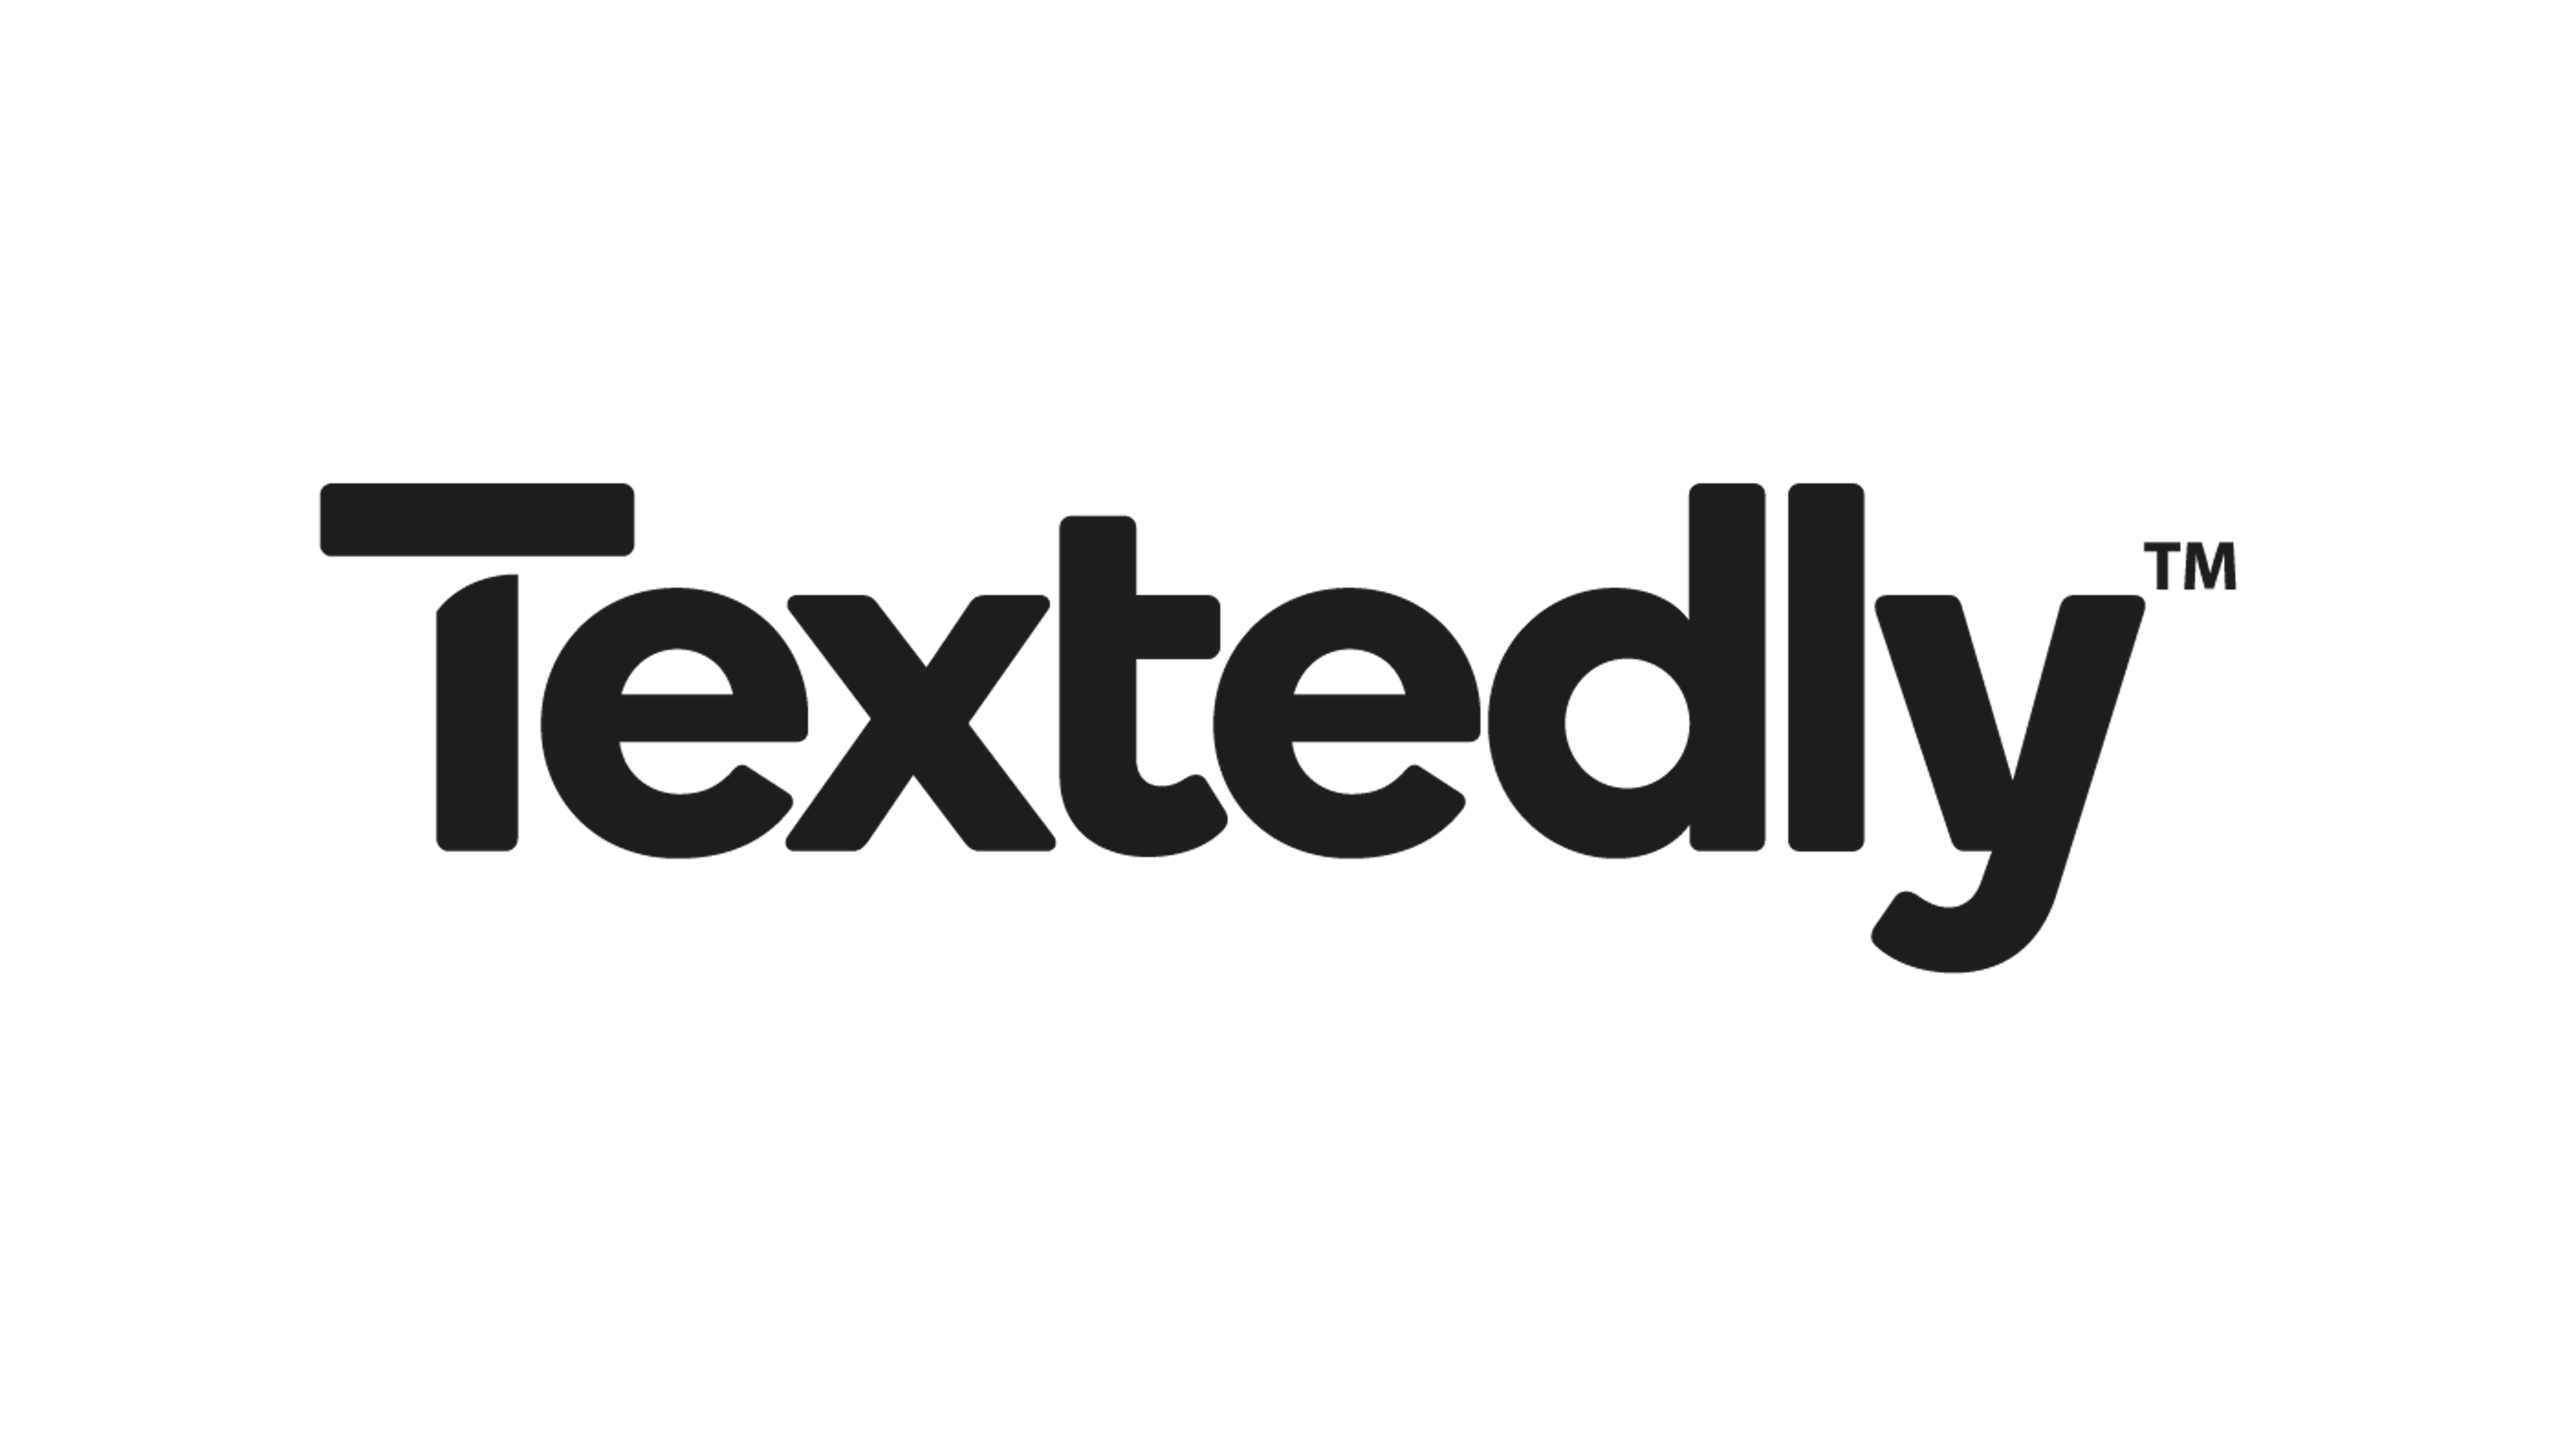 Textedly Logo